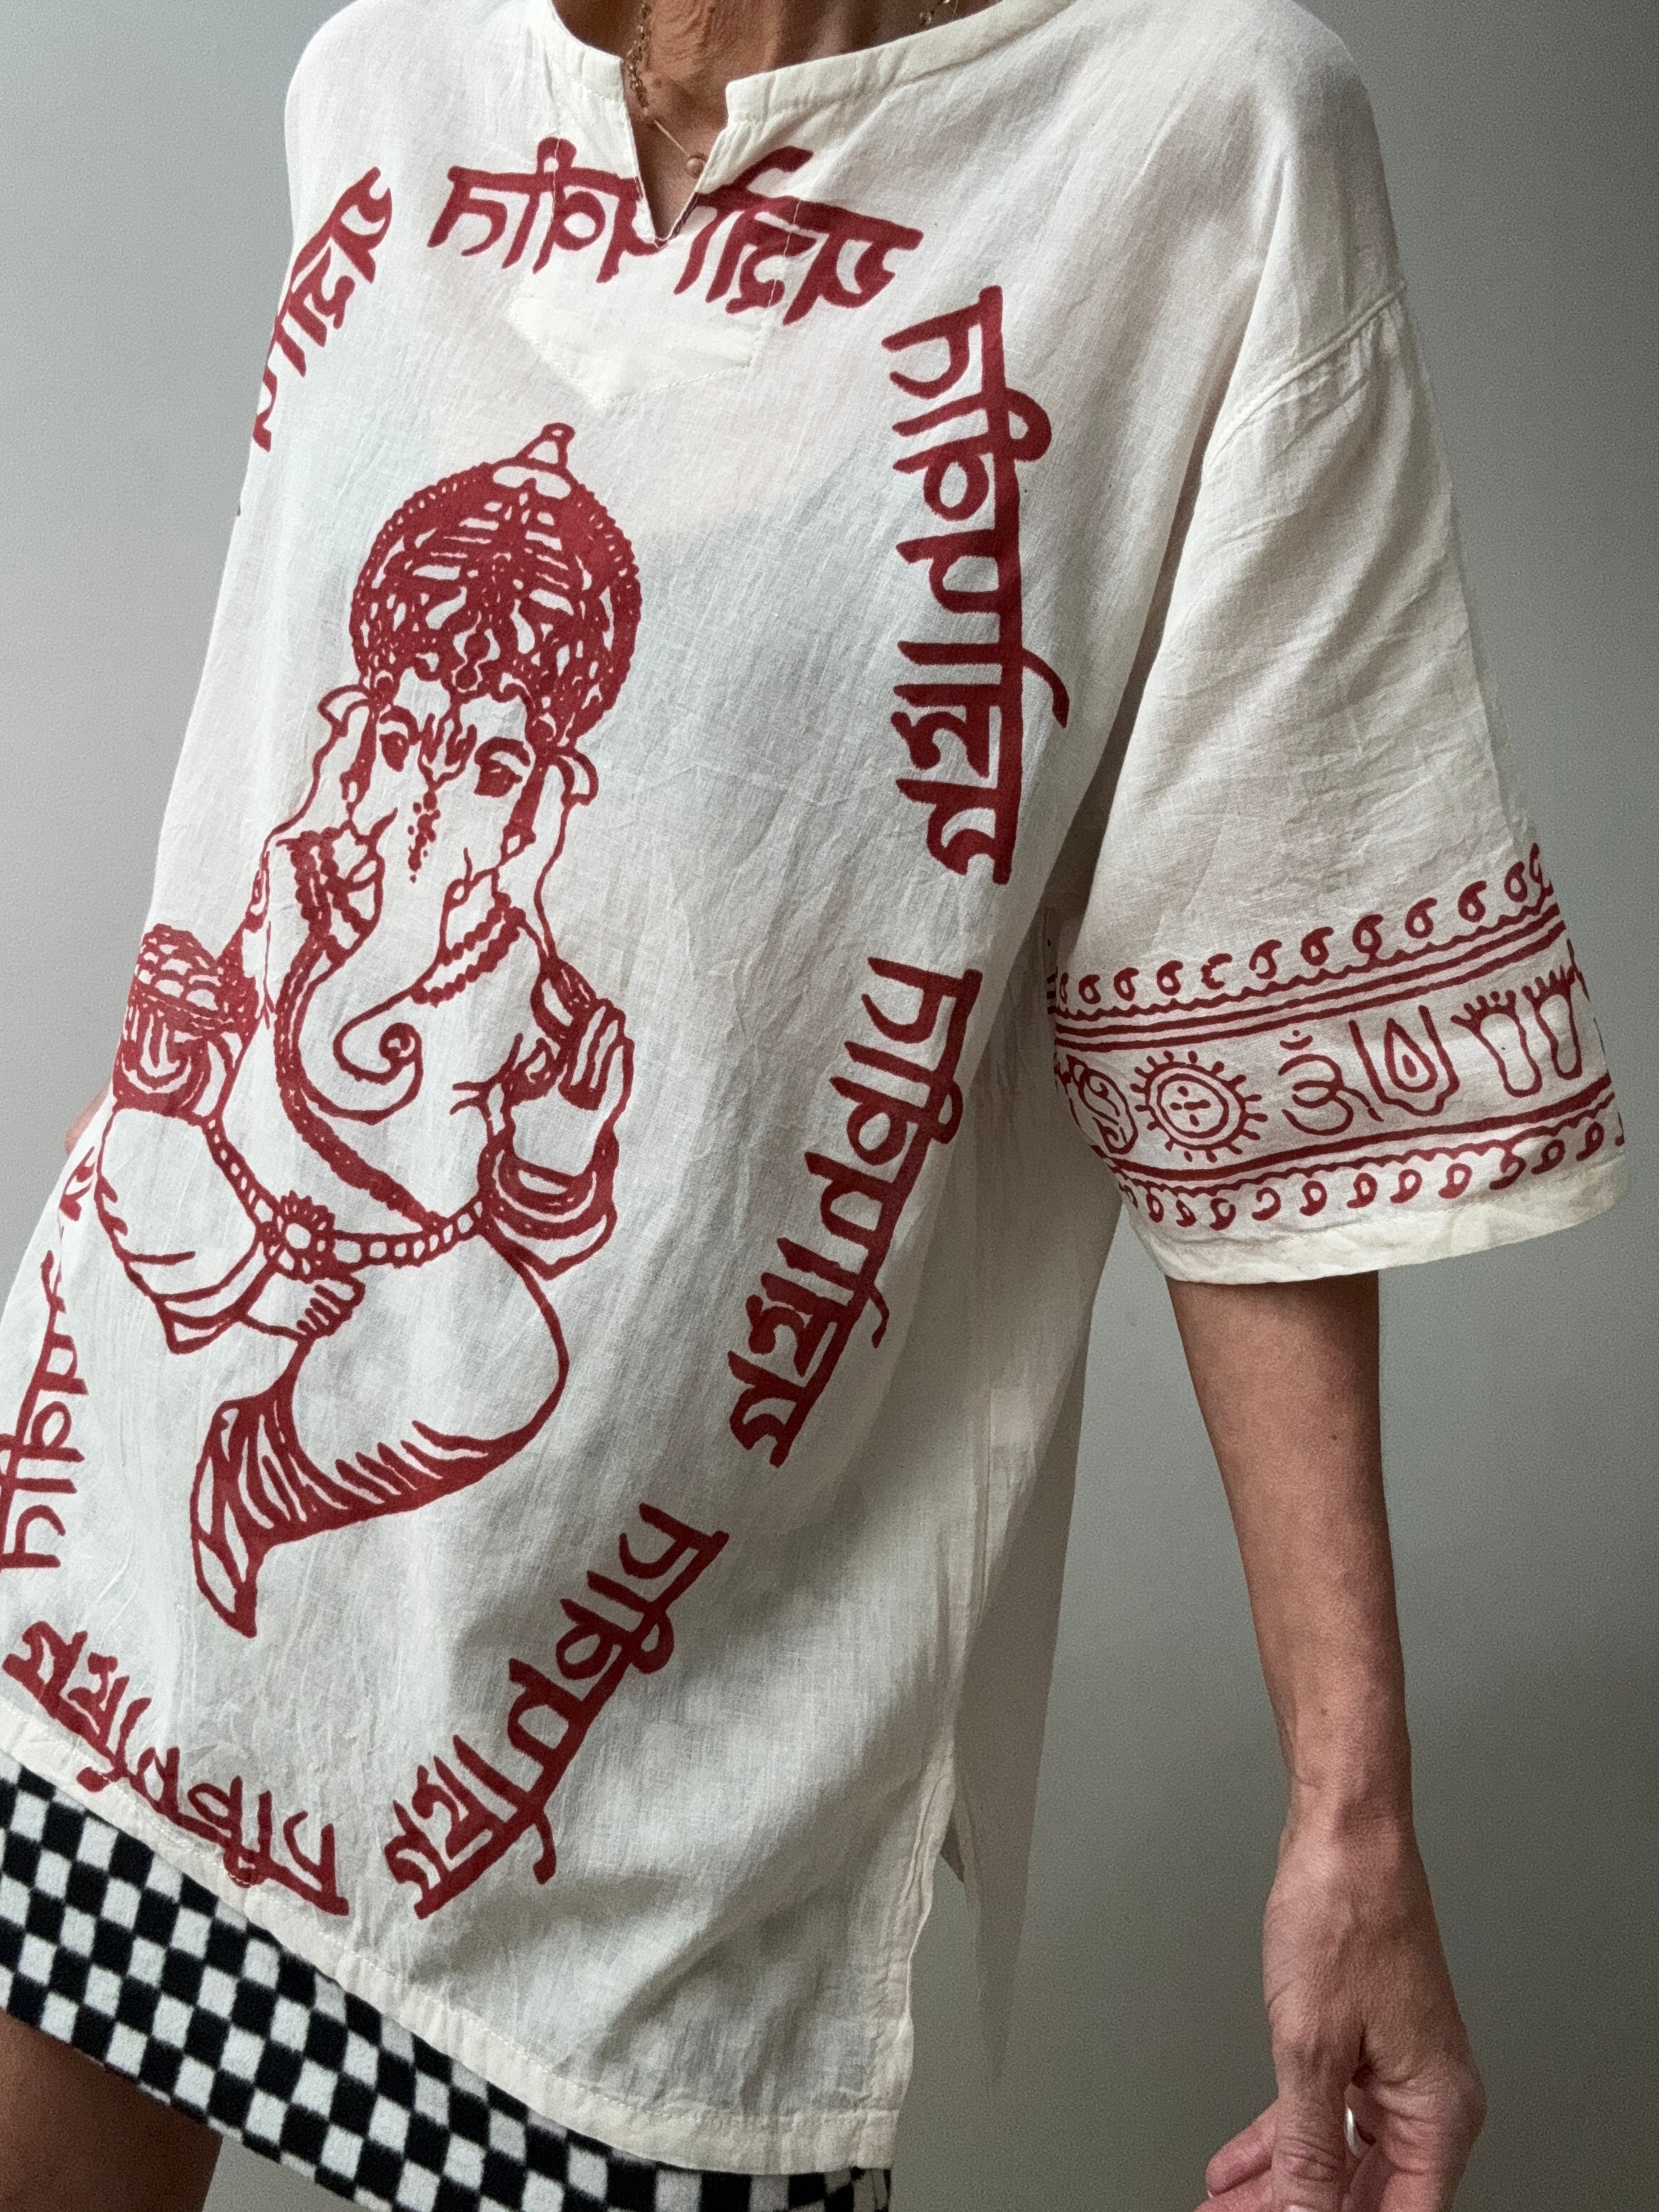 Future Nomads Tops Block Print Ganesh Short Sleeve Top - Natural